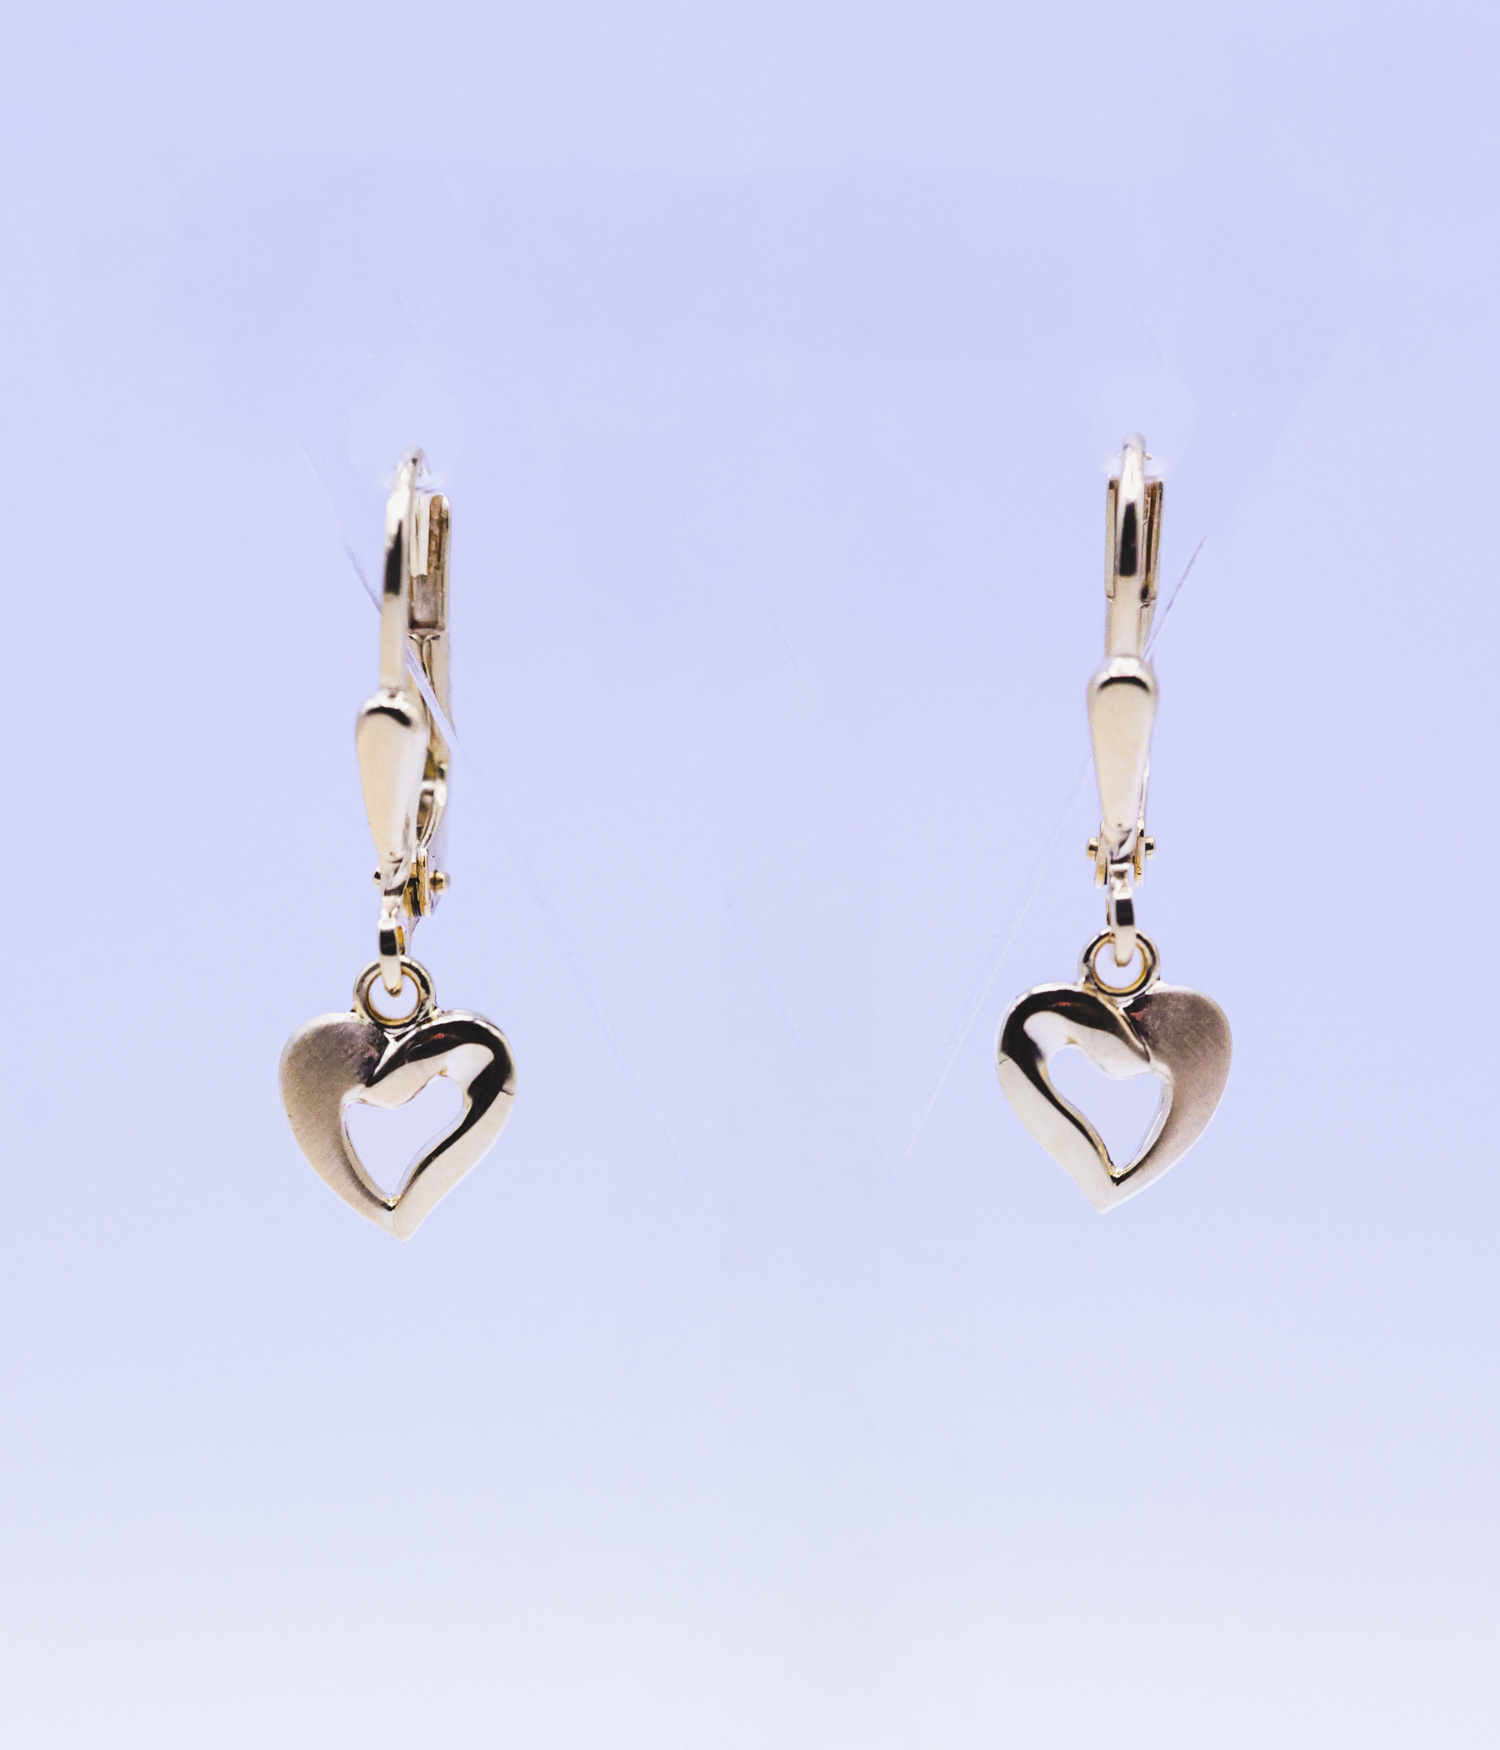 AURONOS Prestige Earrings 18K Yellow Gold Heart